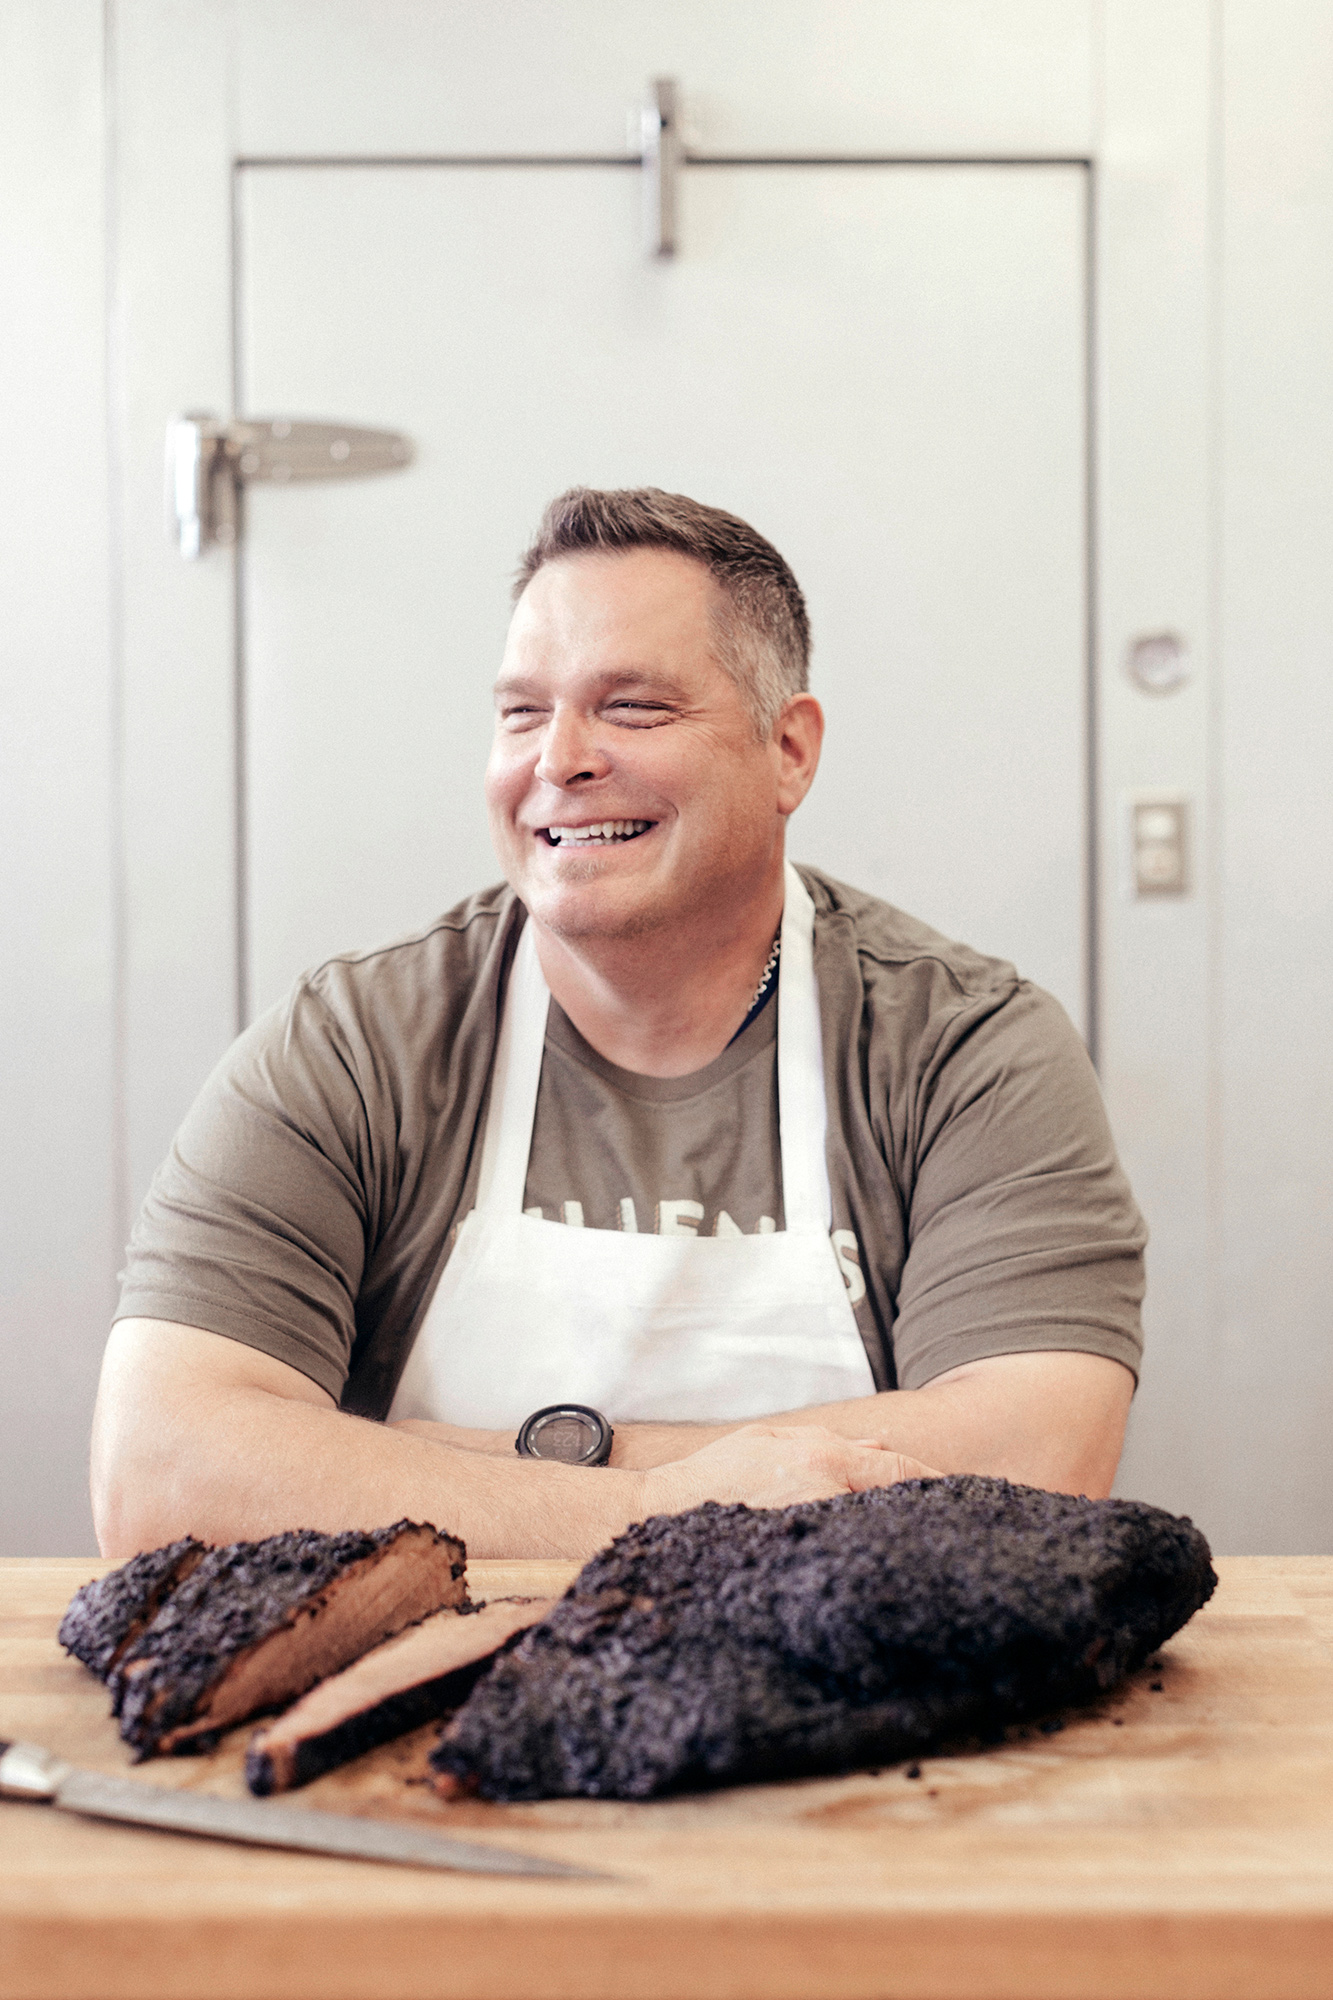 Ronnie Killen, Texas BBQ master, chef and restauranteur, in the kitchen of Killen